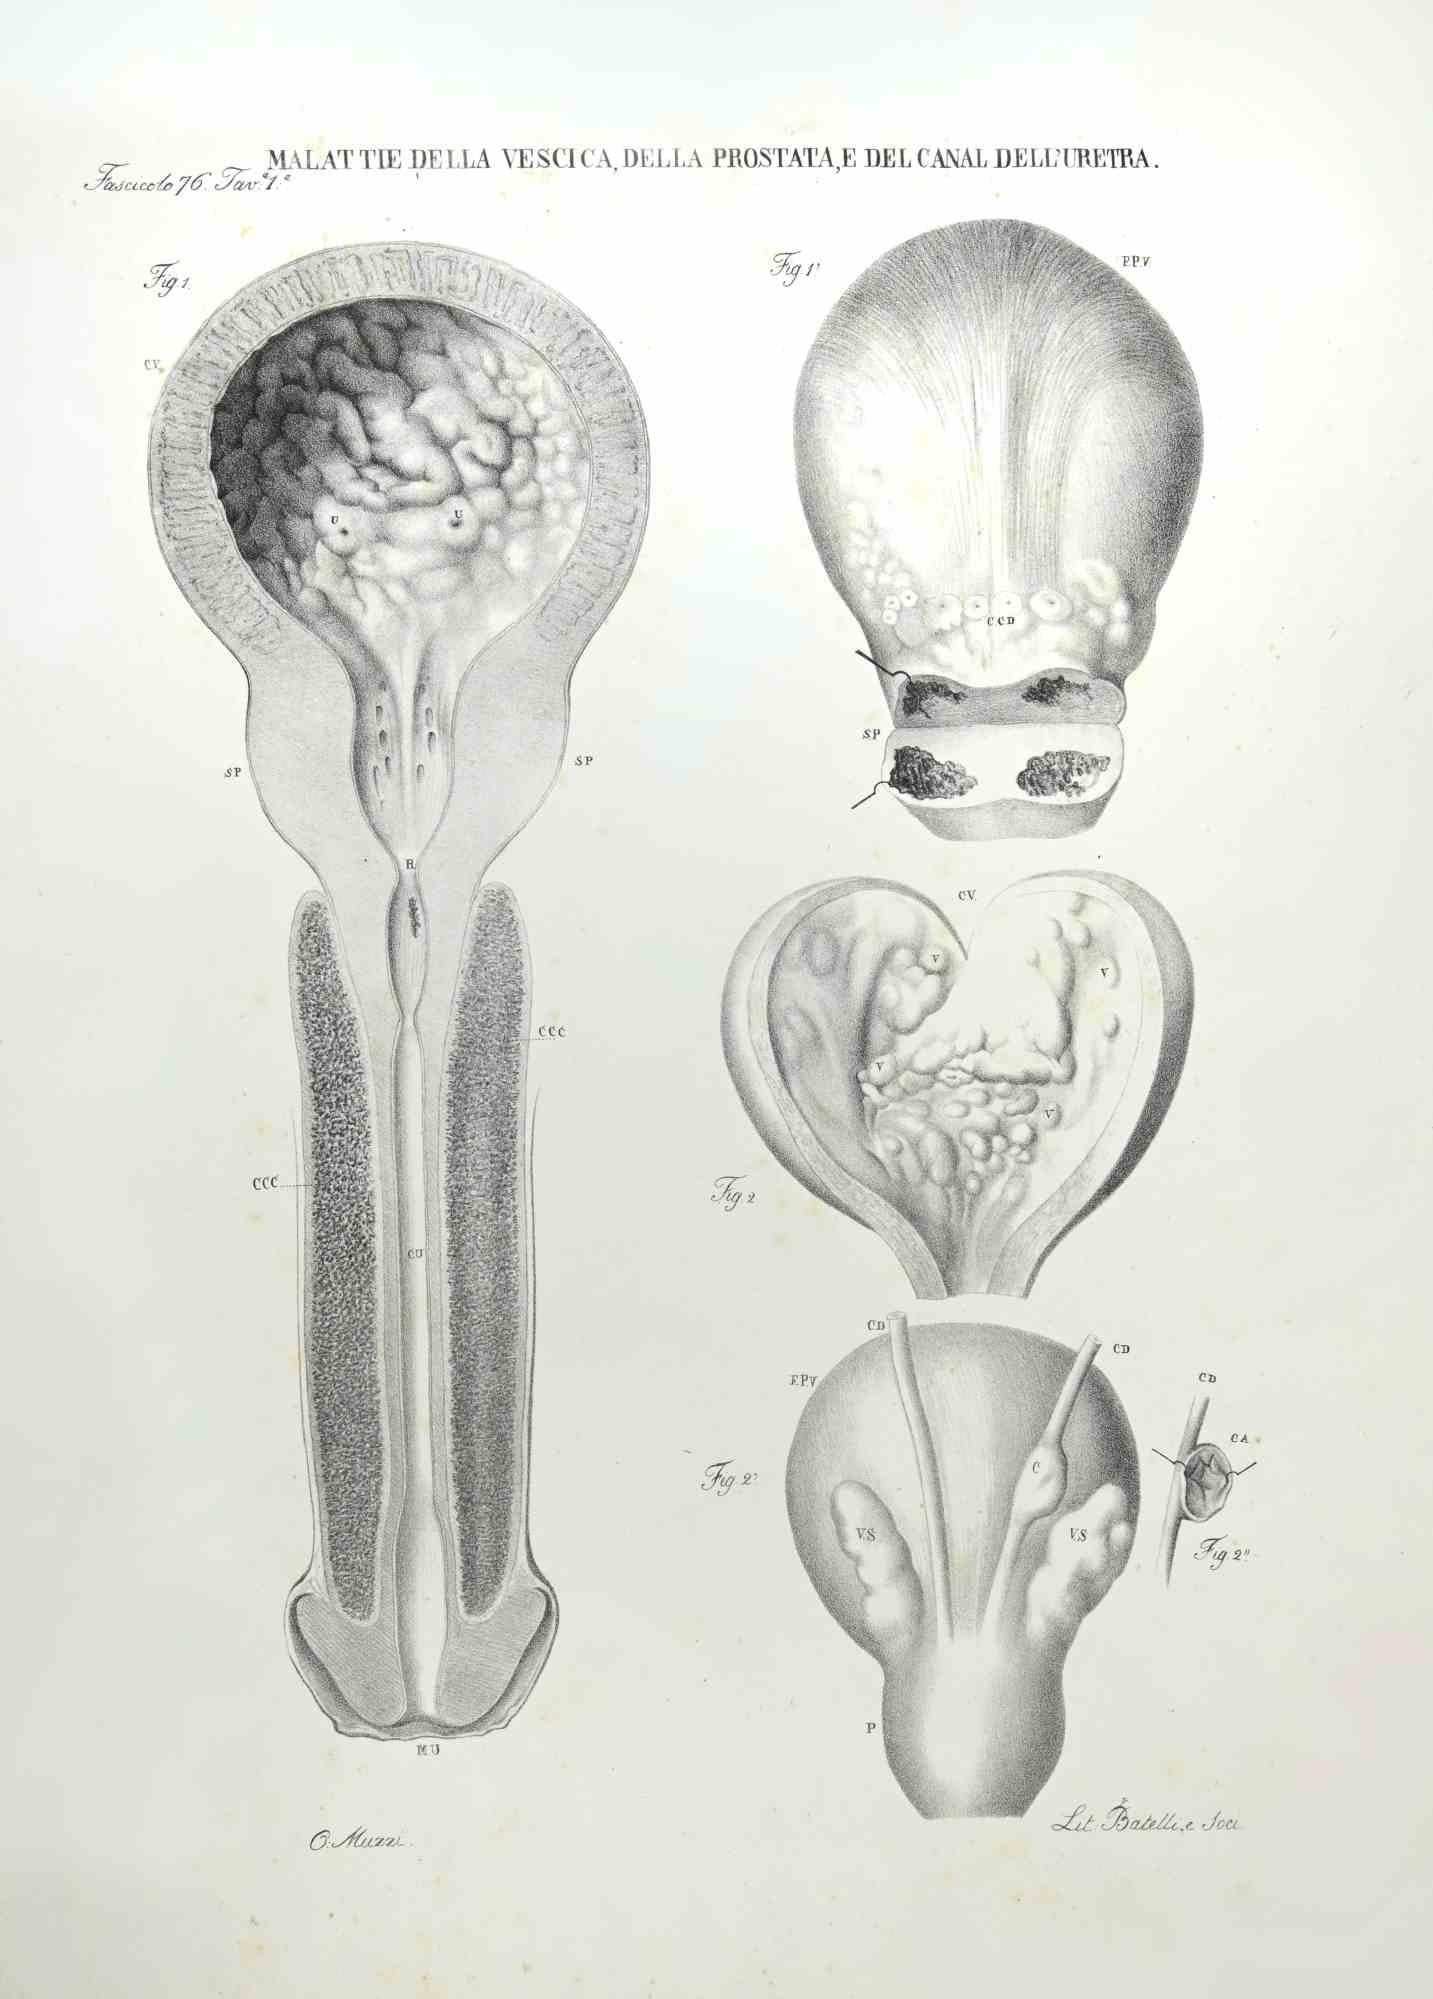 Diseases of the Prostate and the Urethra Canal ist eine handkolorierte Lithographie von Ottavio Muzzi für die Ausgabe von Antoine Chazal, Human Anatomy, Printers Batelli and Ridolfi, realisiert 1843.

Signiert auf der Platte am unteren linken